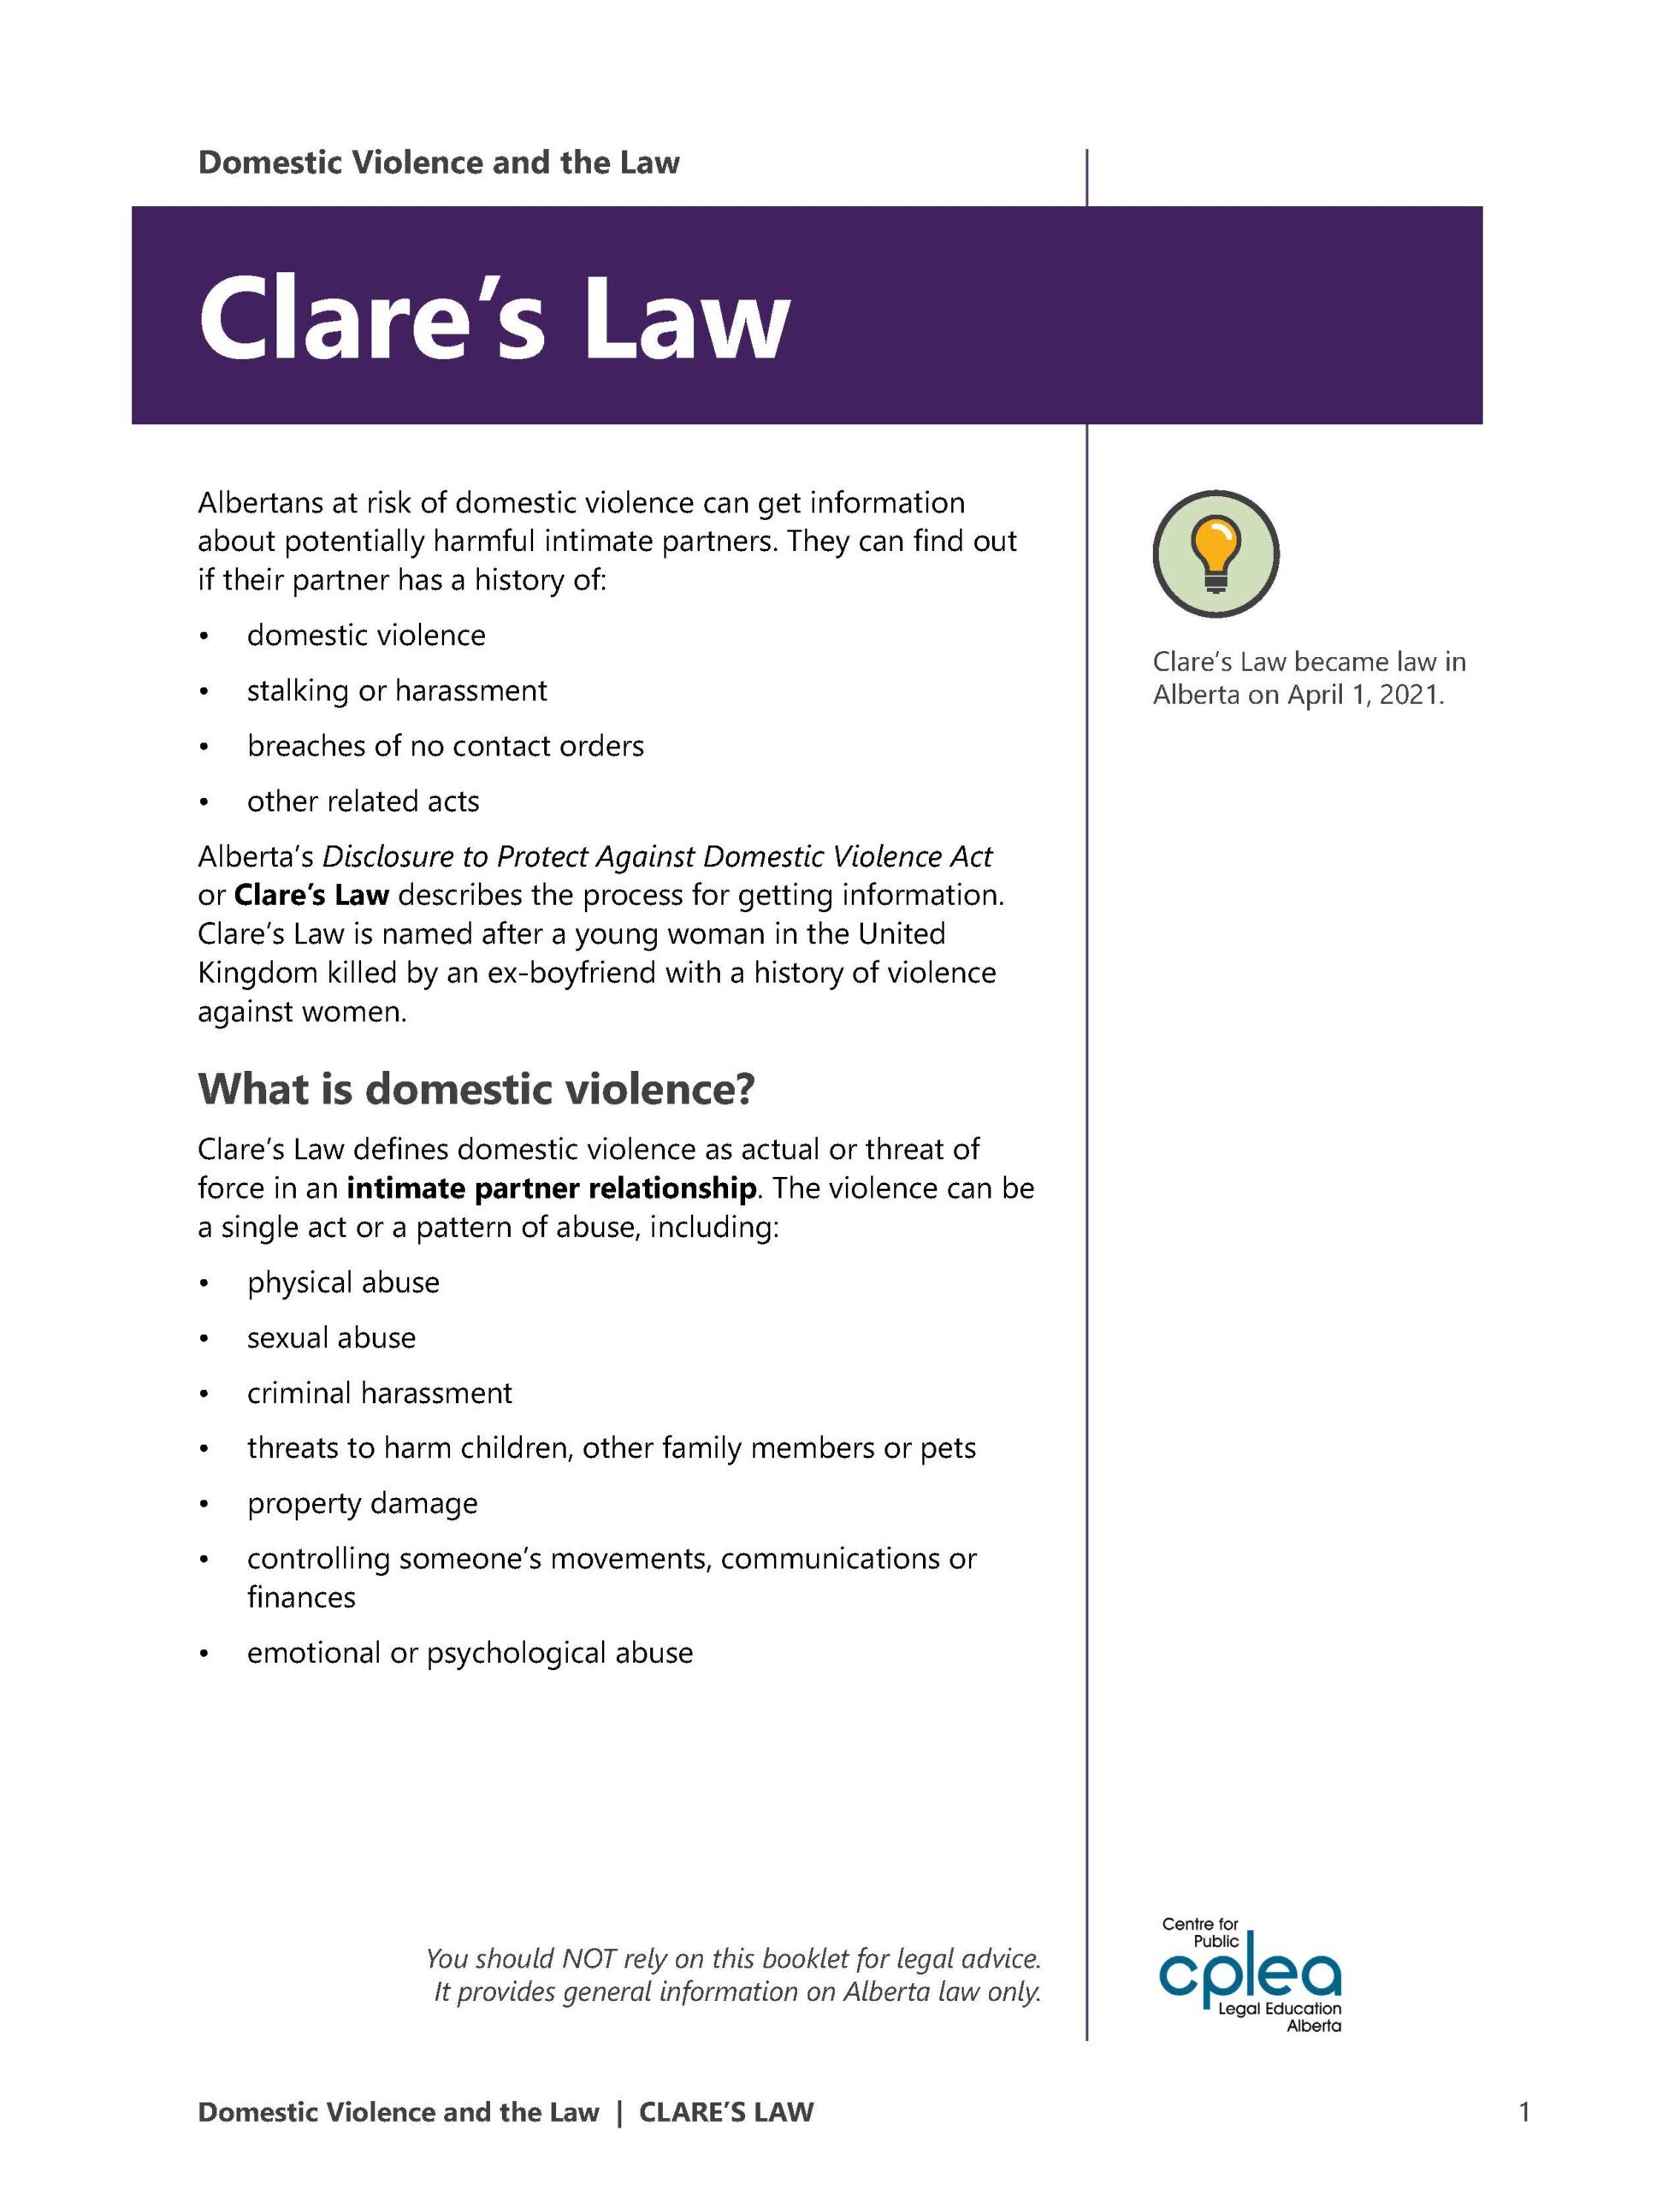 Domestic Violence Clare's Law